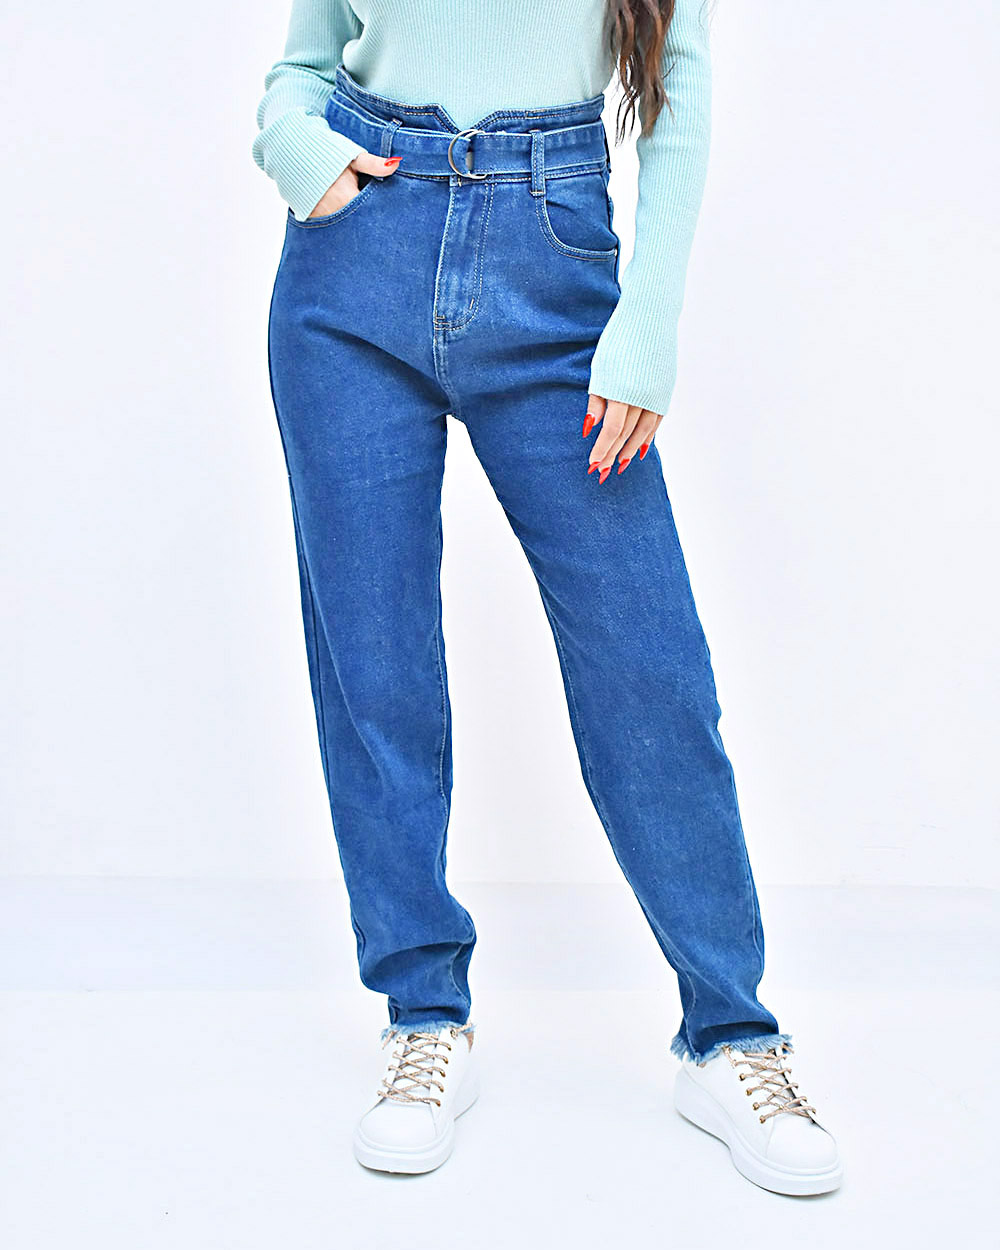 Γυναικείο Παντελόνι τζιν μπλε με ζώνη